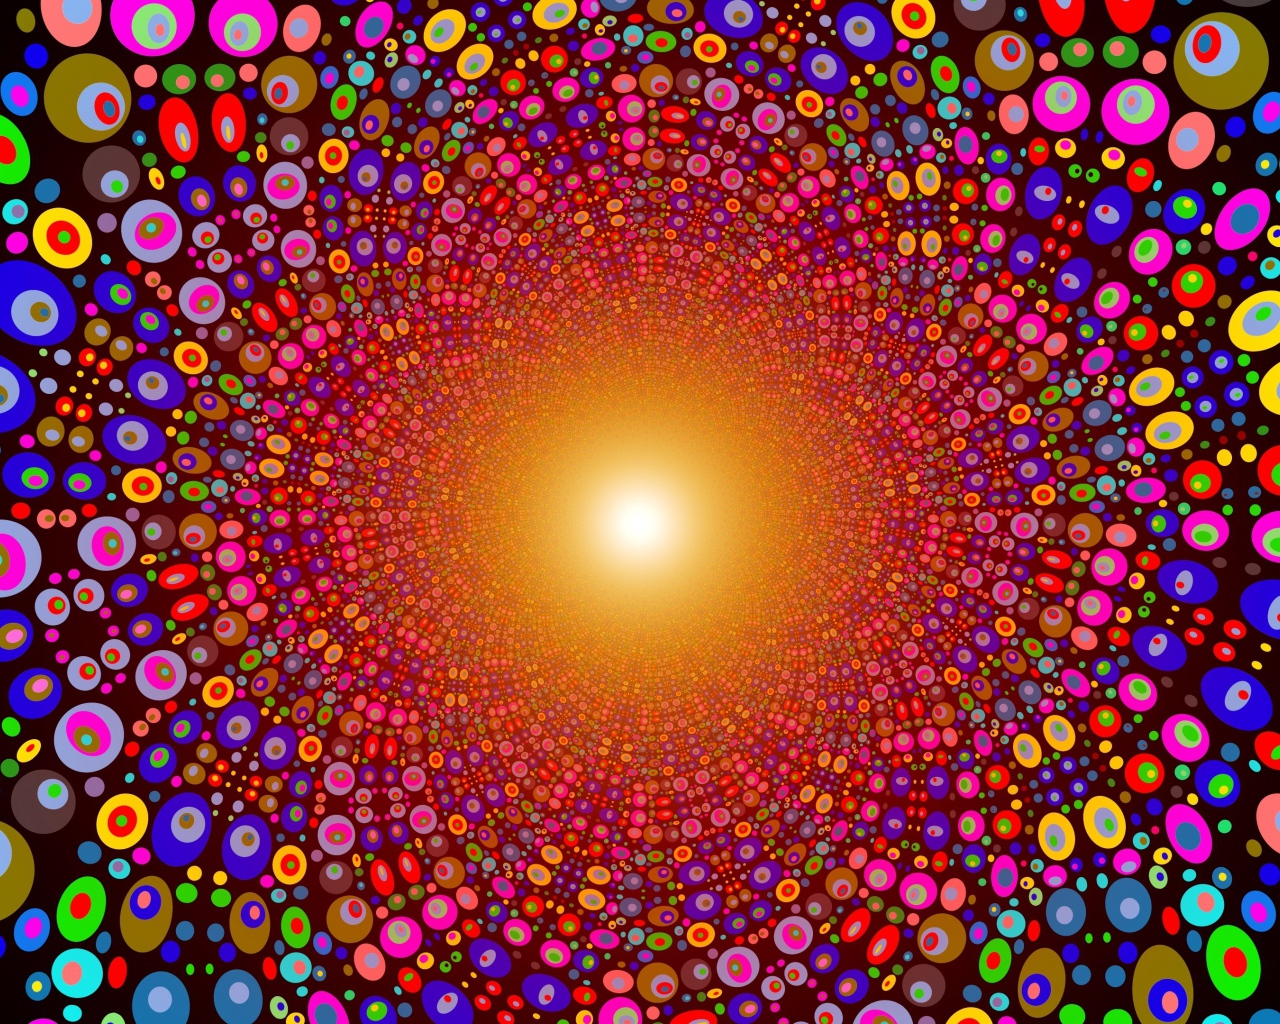 Абстрактный рисунок с яркими разноцветными кругами